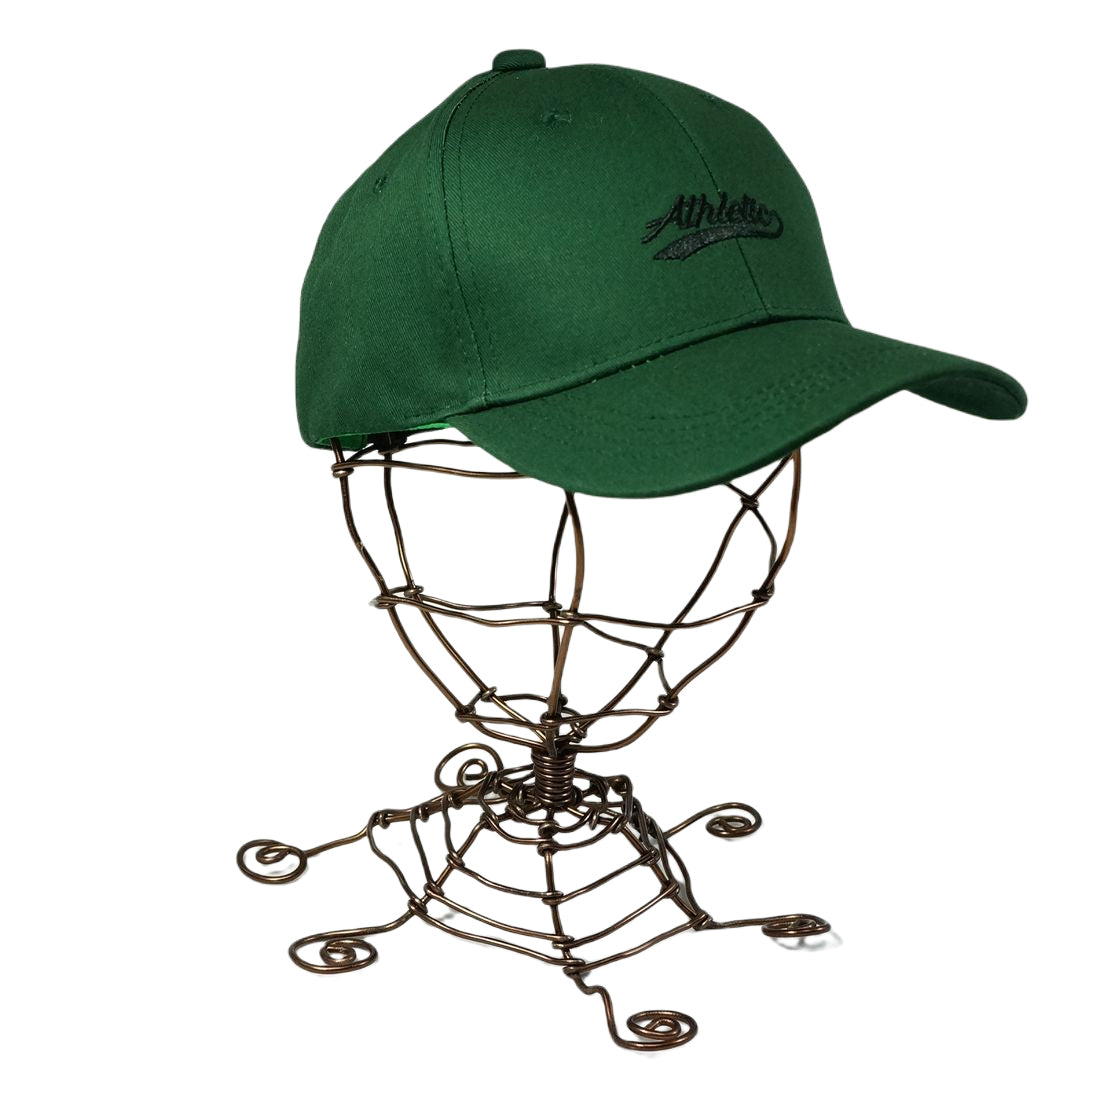 帽子 キャップ CAP メンズ レディース ロゴ 刺繍 ベースボールキャップ コットン 春 夏 秋 冬